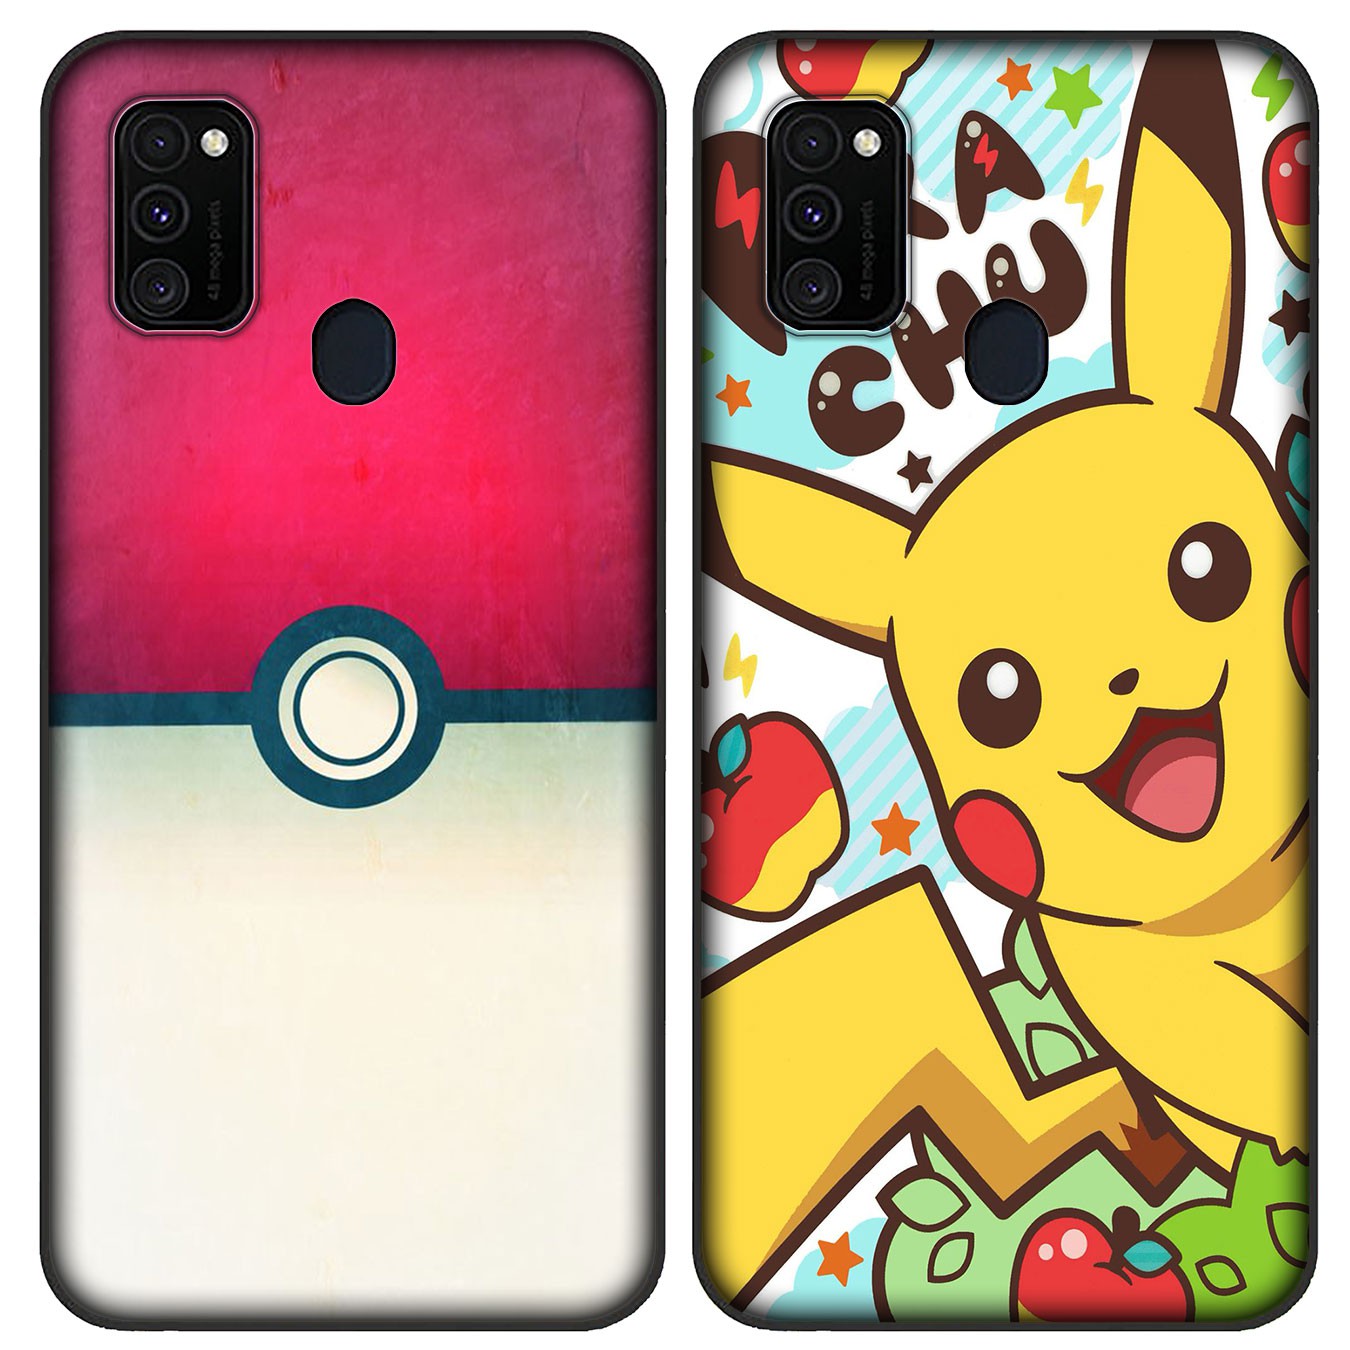 Soft Silicone Samsung Galaxy Note 20 Ultra 10 Plus Lite 9 8 A11 A51 A71 + Phone Case Pikachu Pokémon cute Casing